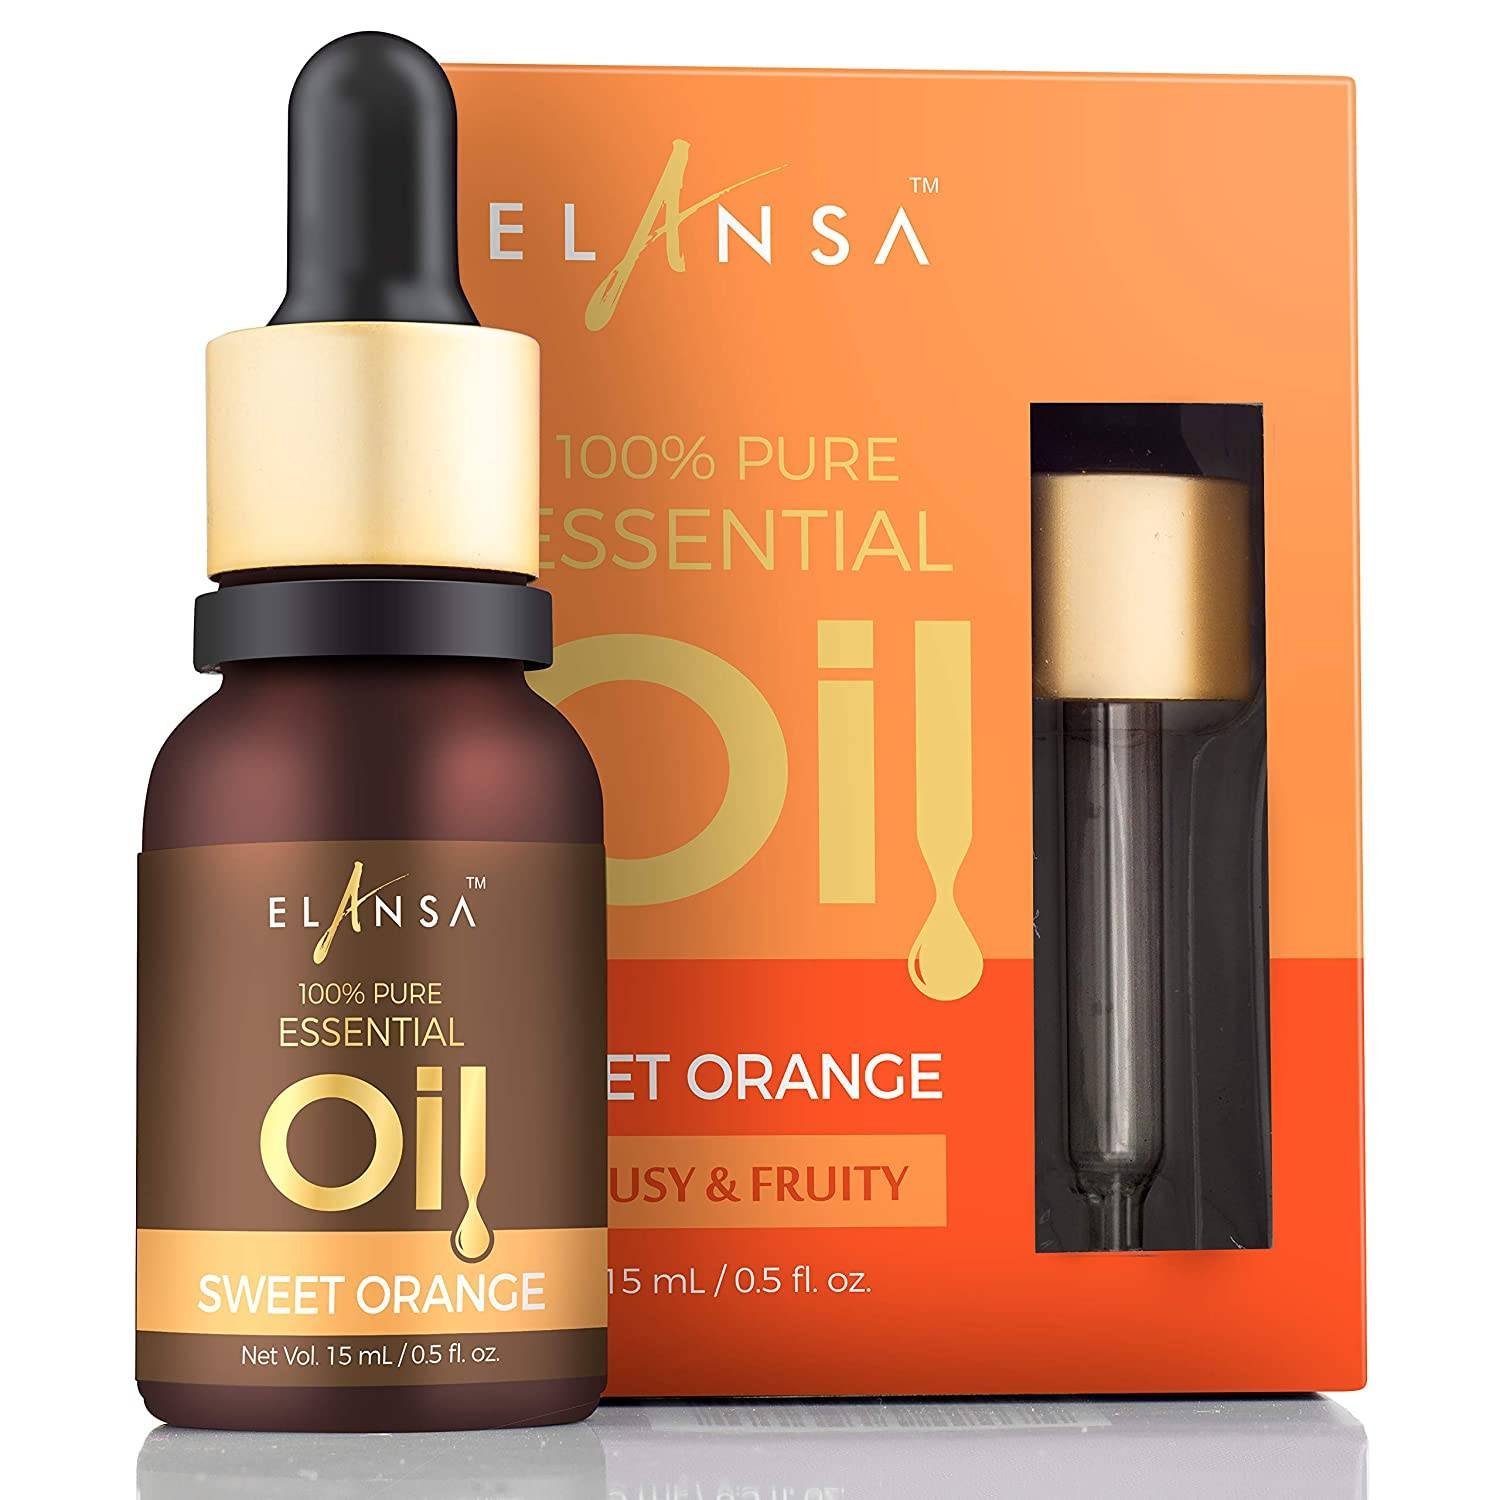 Elansa 100% Pure Sweet Orange Essential Oil, 15ml